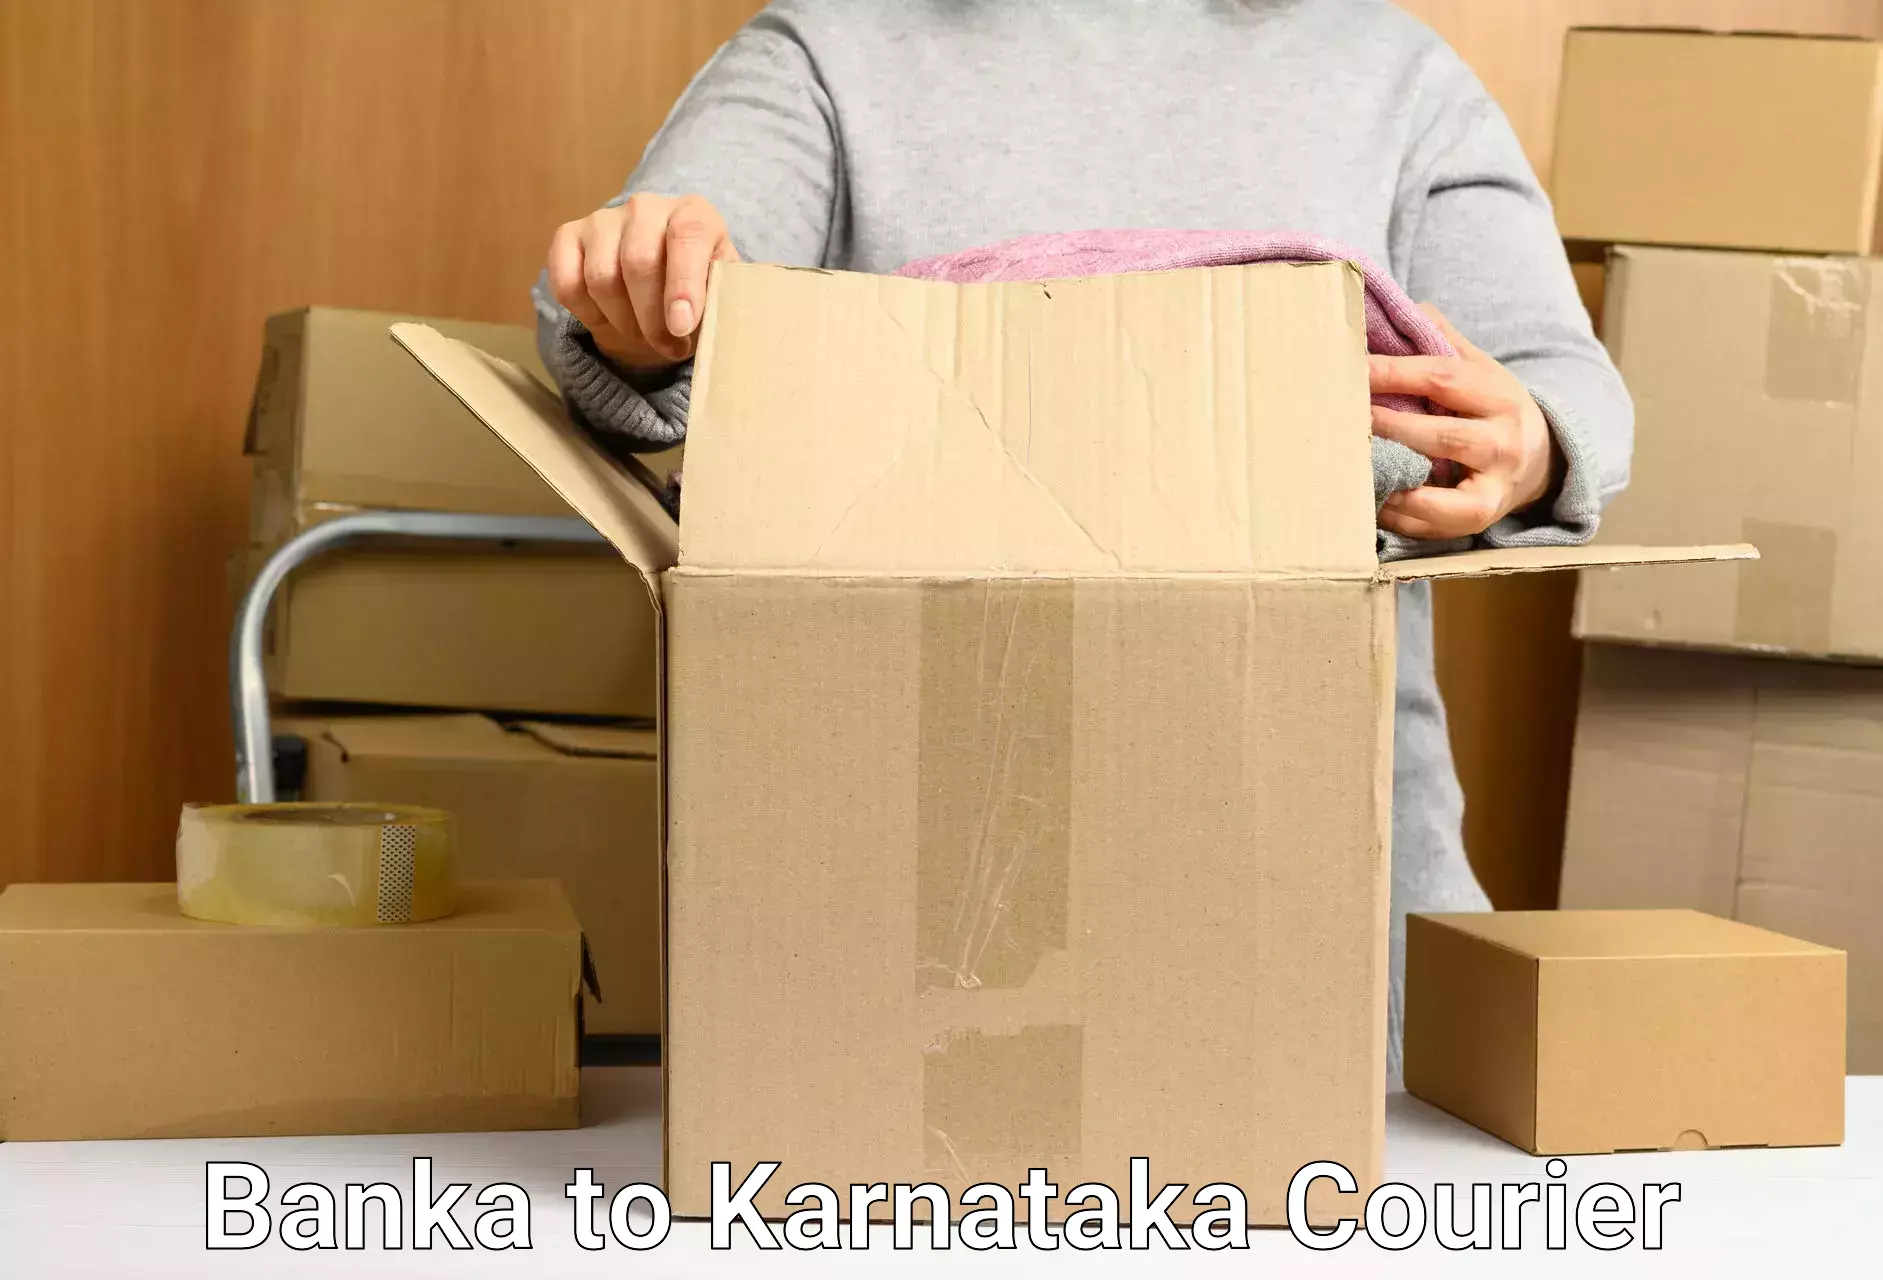 Personalized courier experiences Banka to Kanakapura